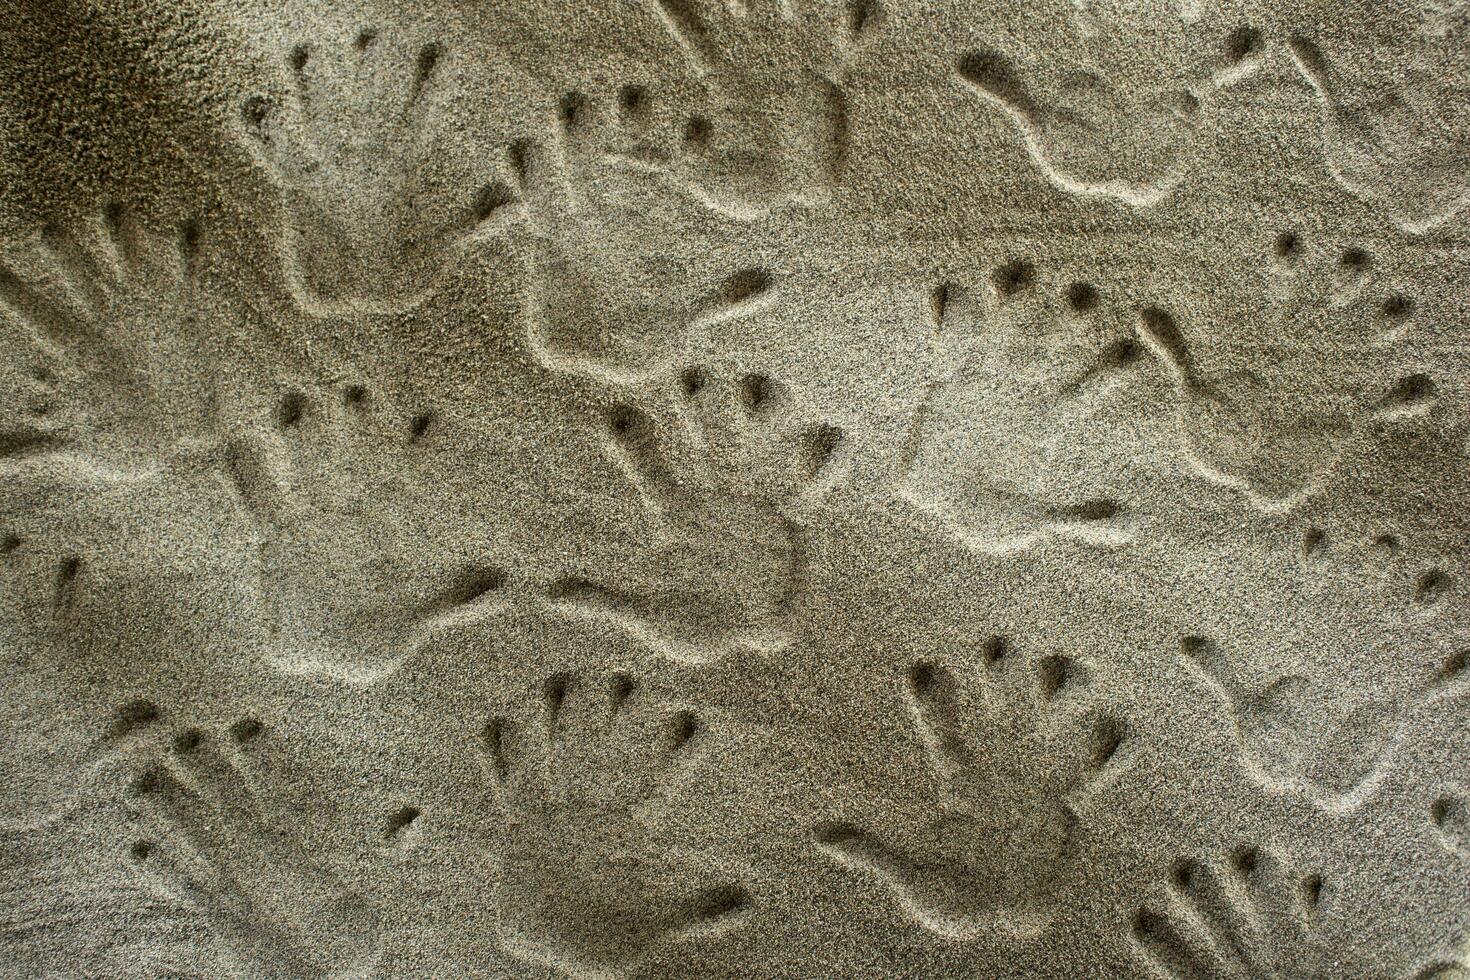 empreintes de mains dans le le sable photo